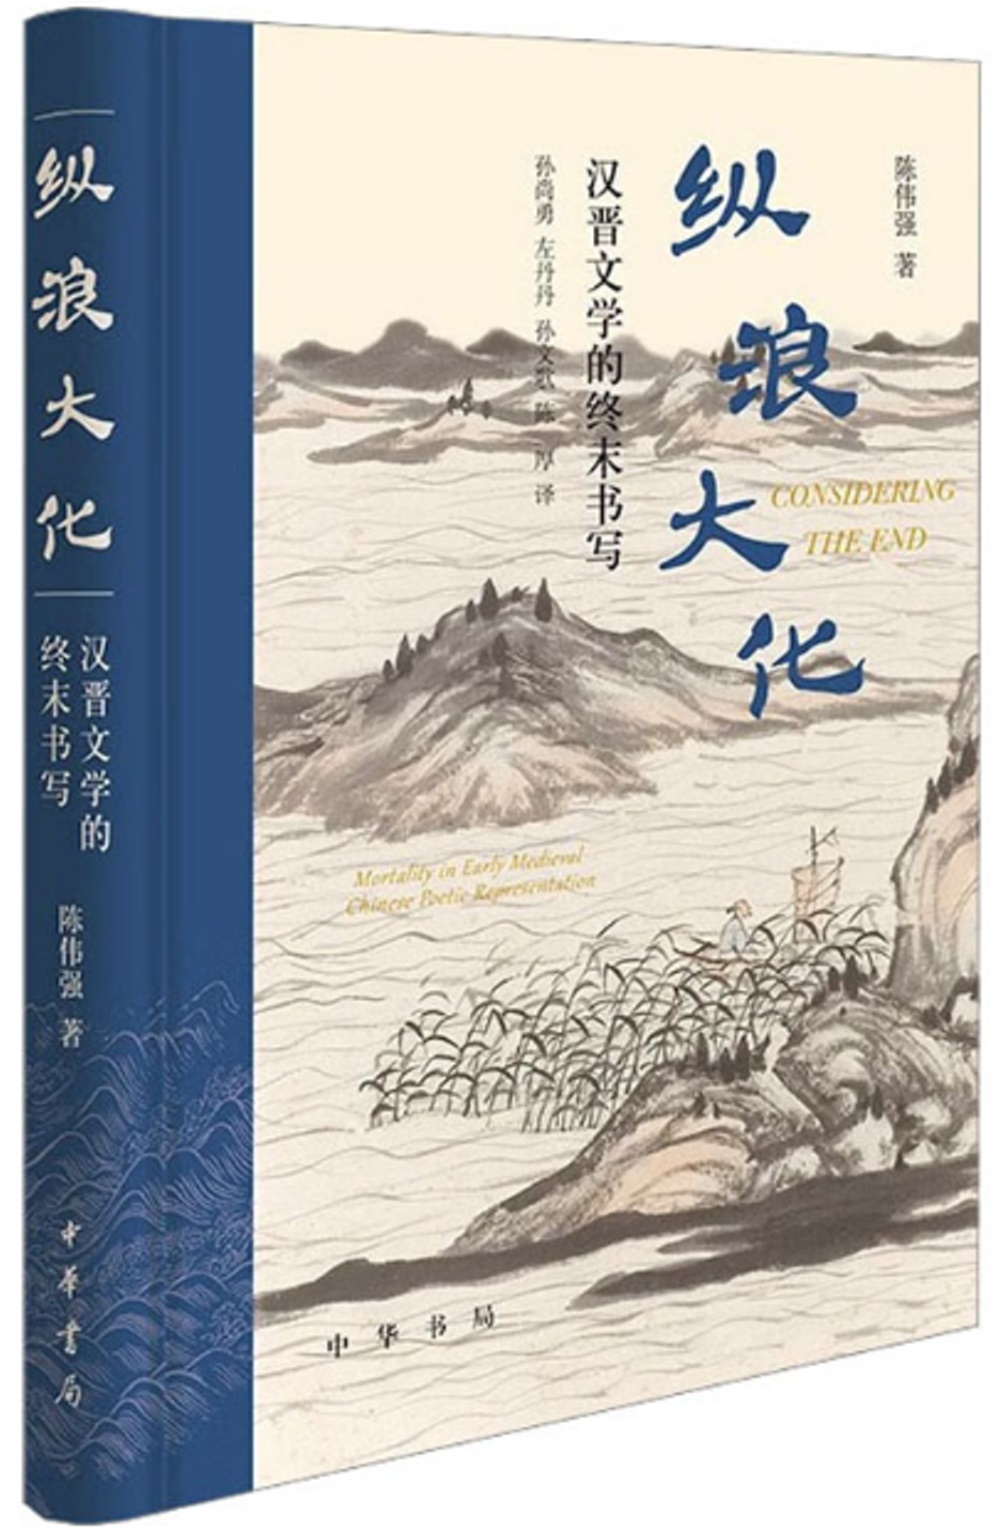 縱浪大化：漢晉文學的終末書寫